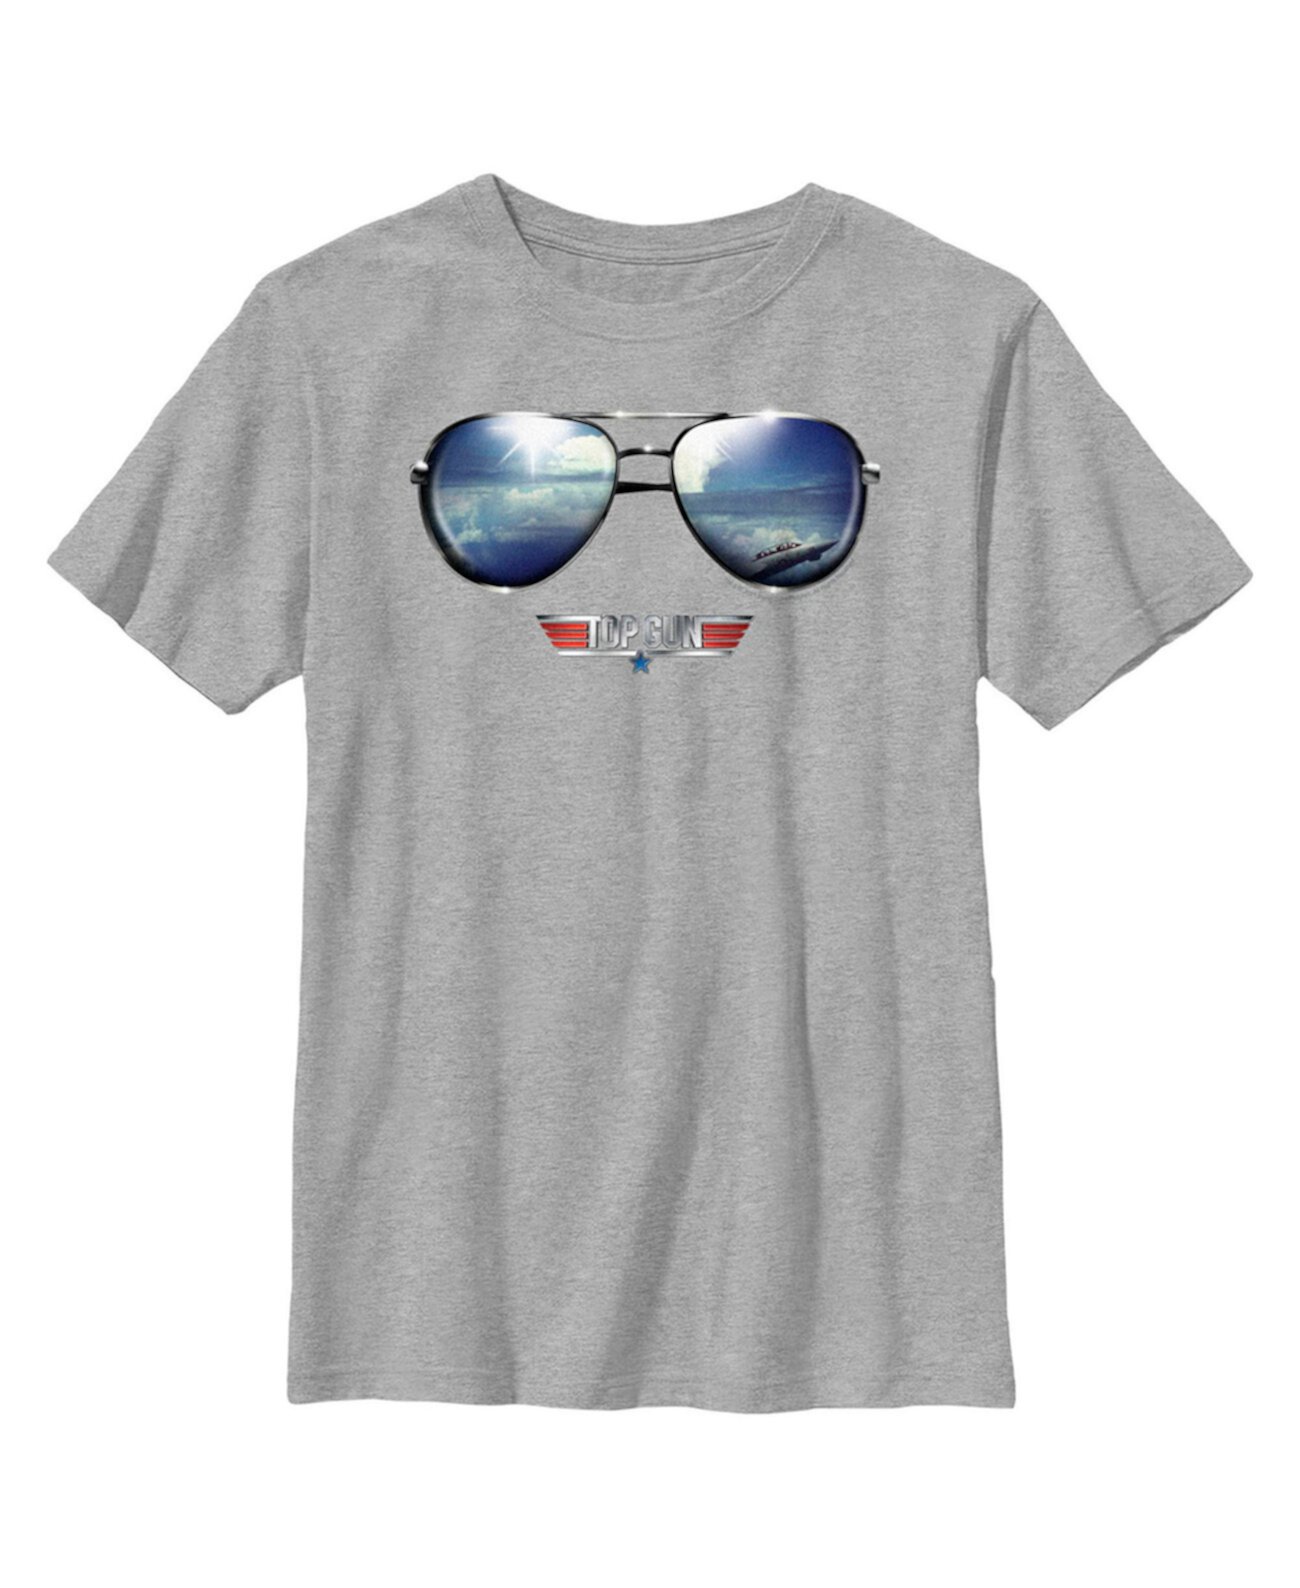 Детская футболка с логотипом Top Gun Aviator для мальчиков и отражением Paramount